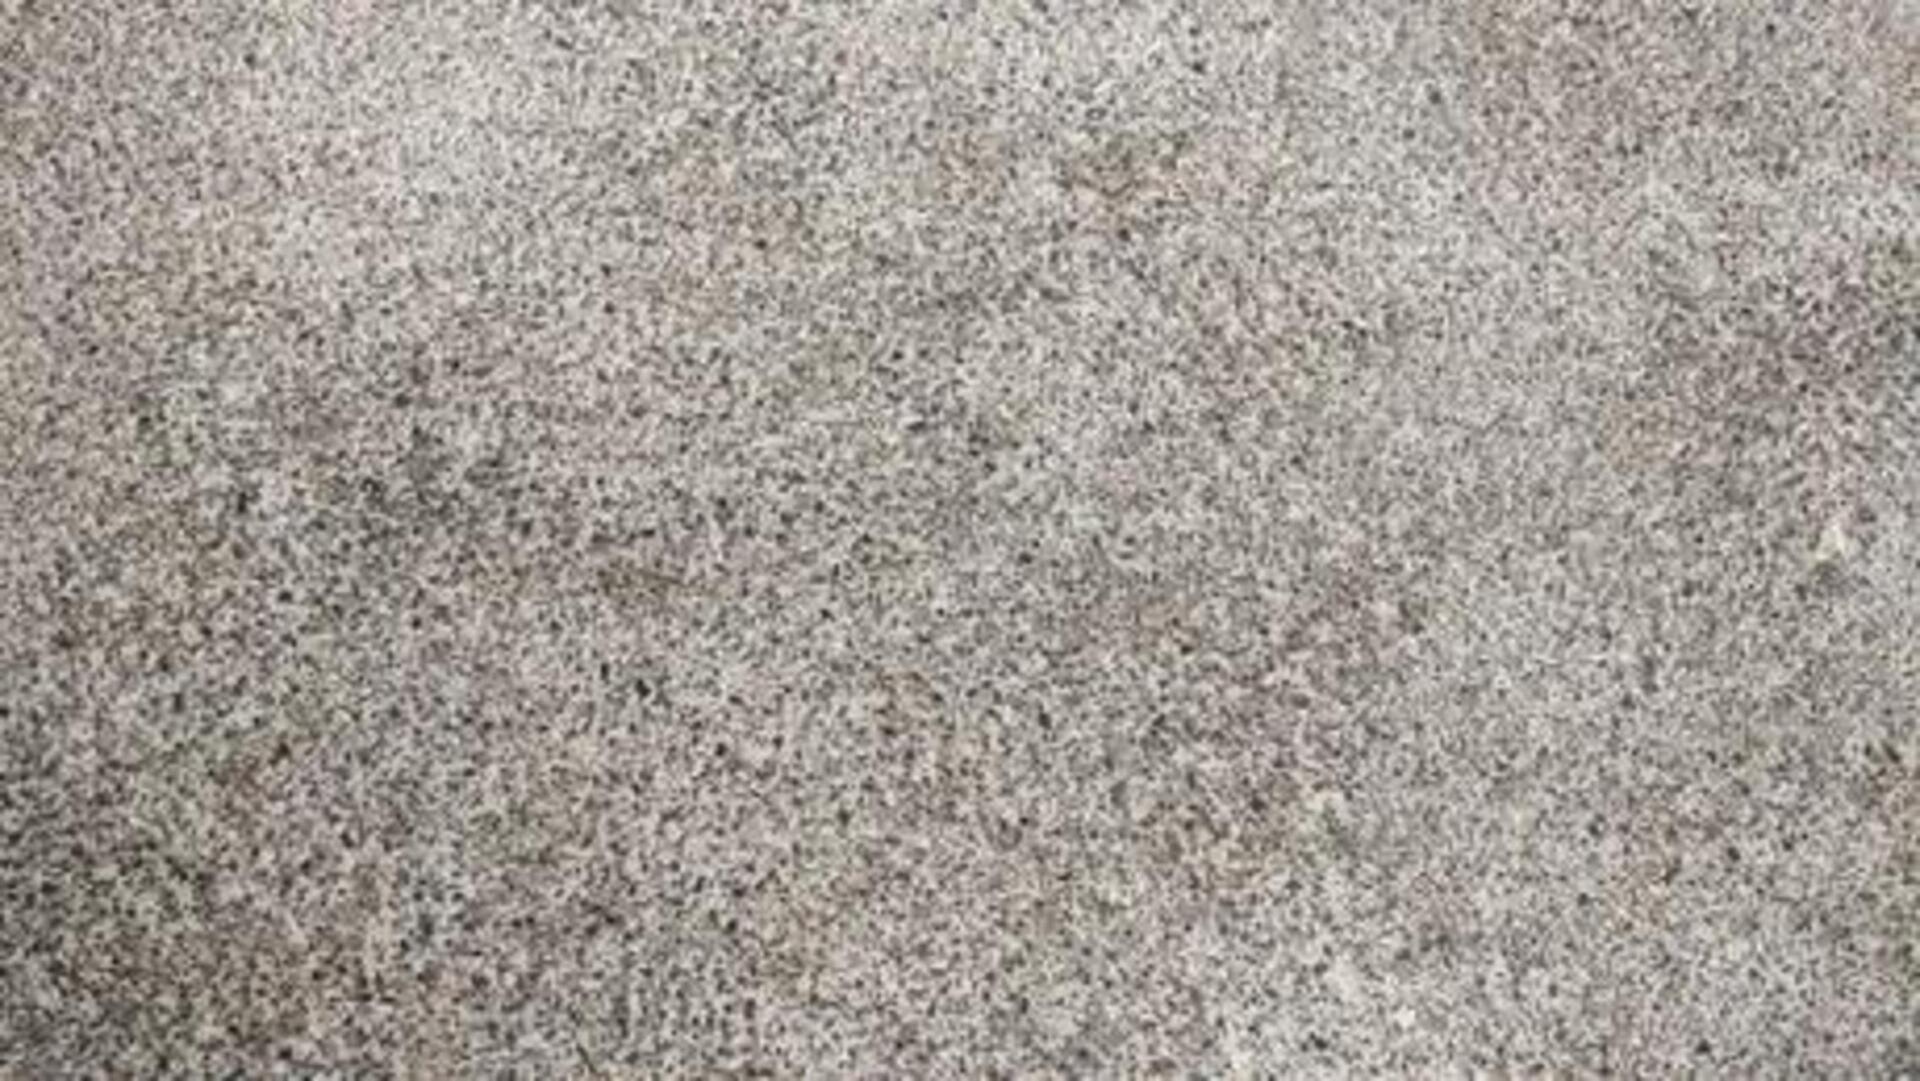 Sample of granite countertop